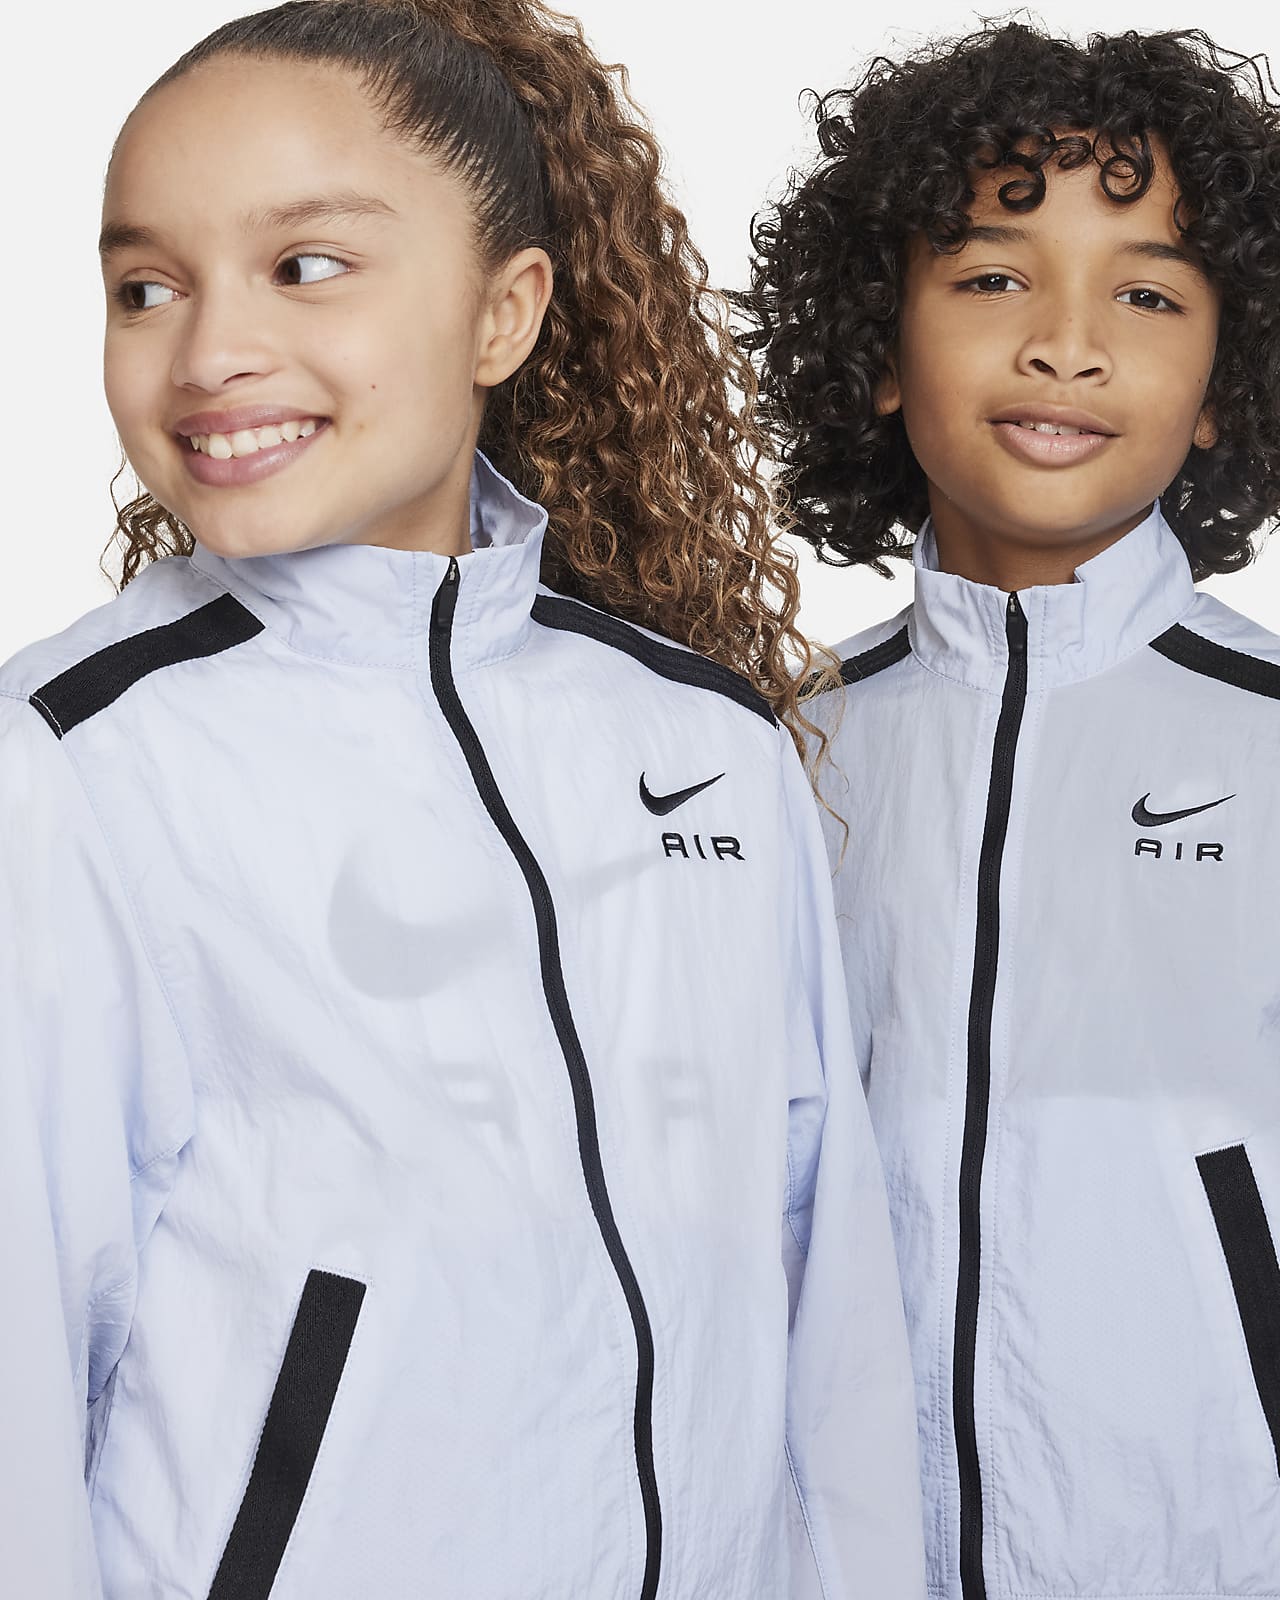 Nike Air Trainingspak voor kids. NL